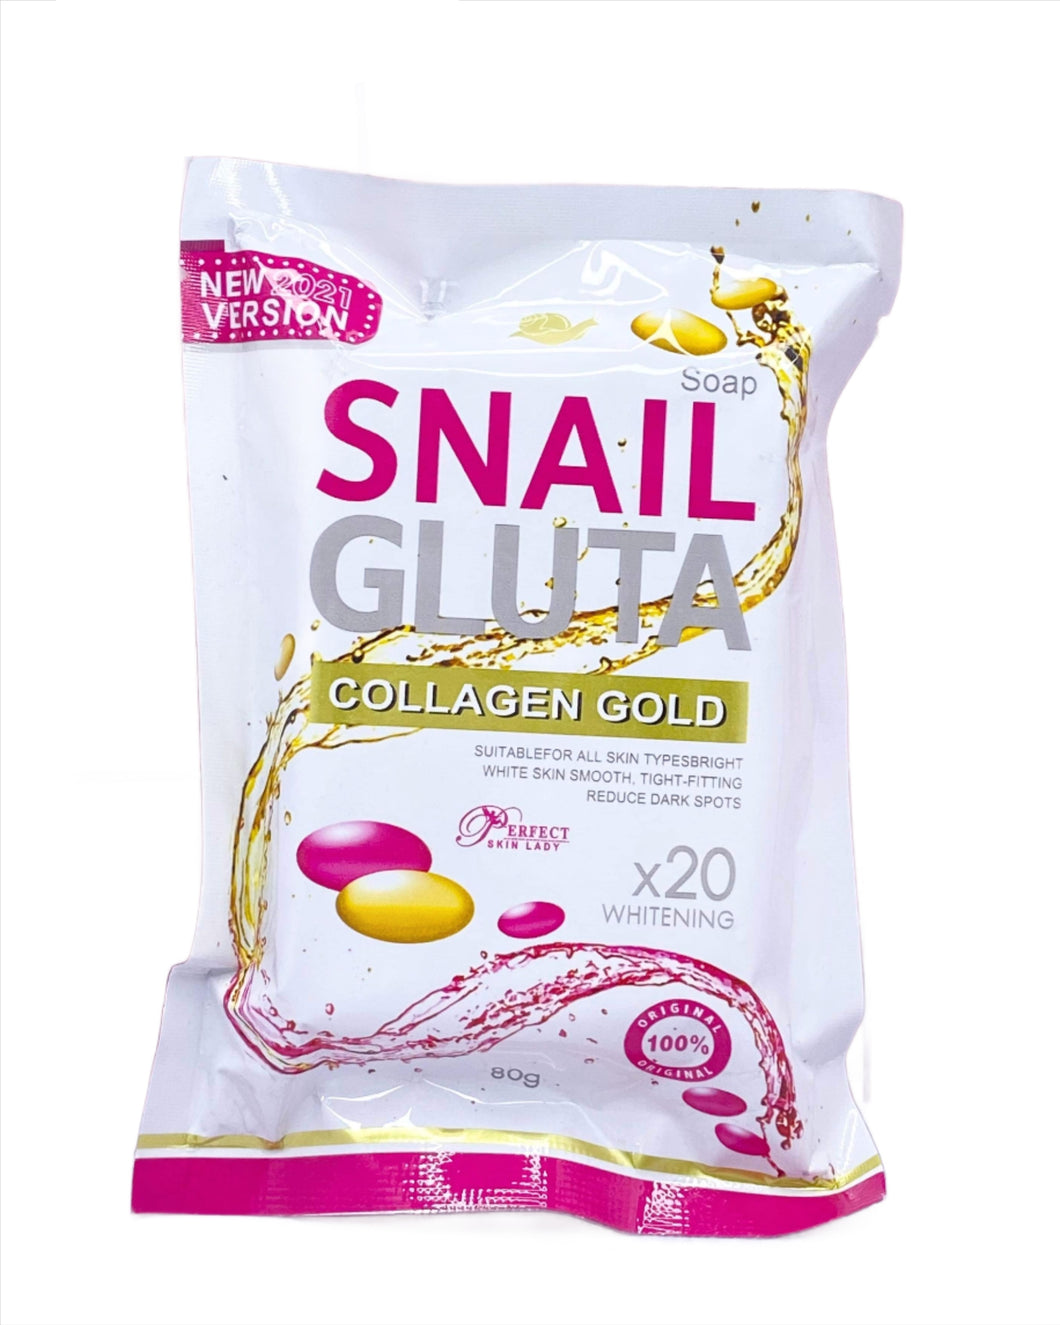 Snail GIuta Collagen Gold Whitening x20 (80g) Authentic Thailand